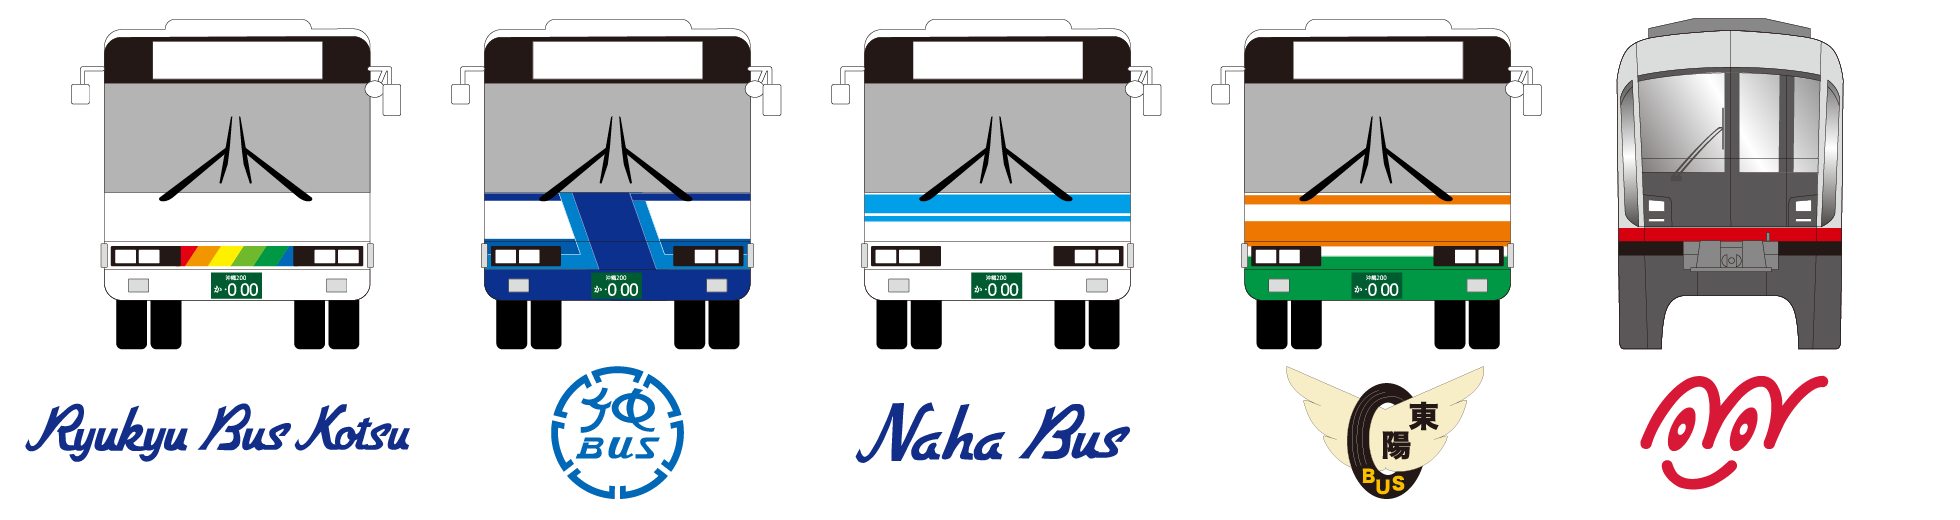 対象となる路線バス：111、117、空港リムジンバス、定期観光バスを除く琉球バス、沖縄バス、那覇バス、東陽バスの全路線